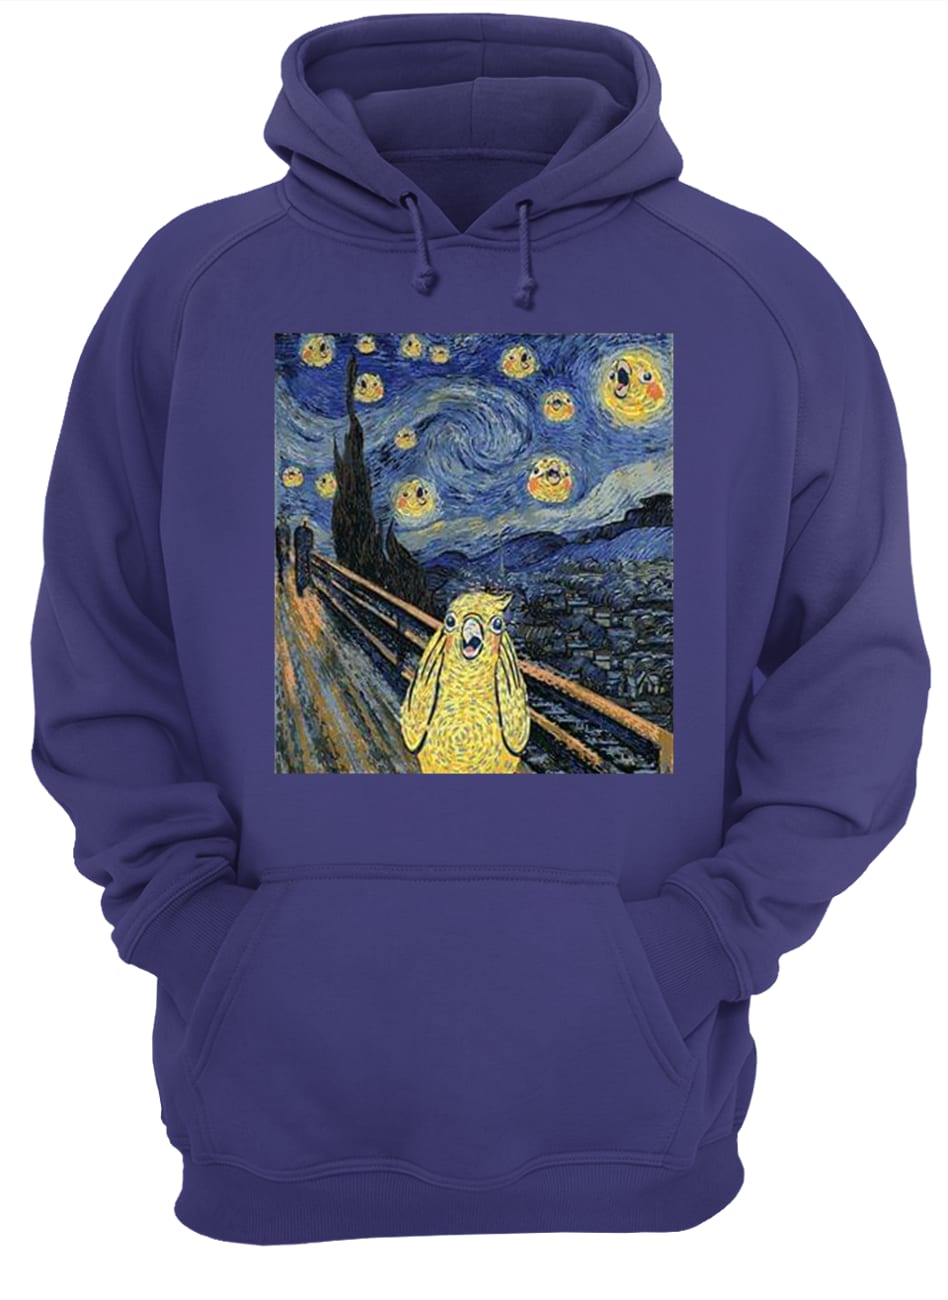 Vincent van gogh the starry night bird hoodie